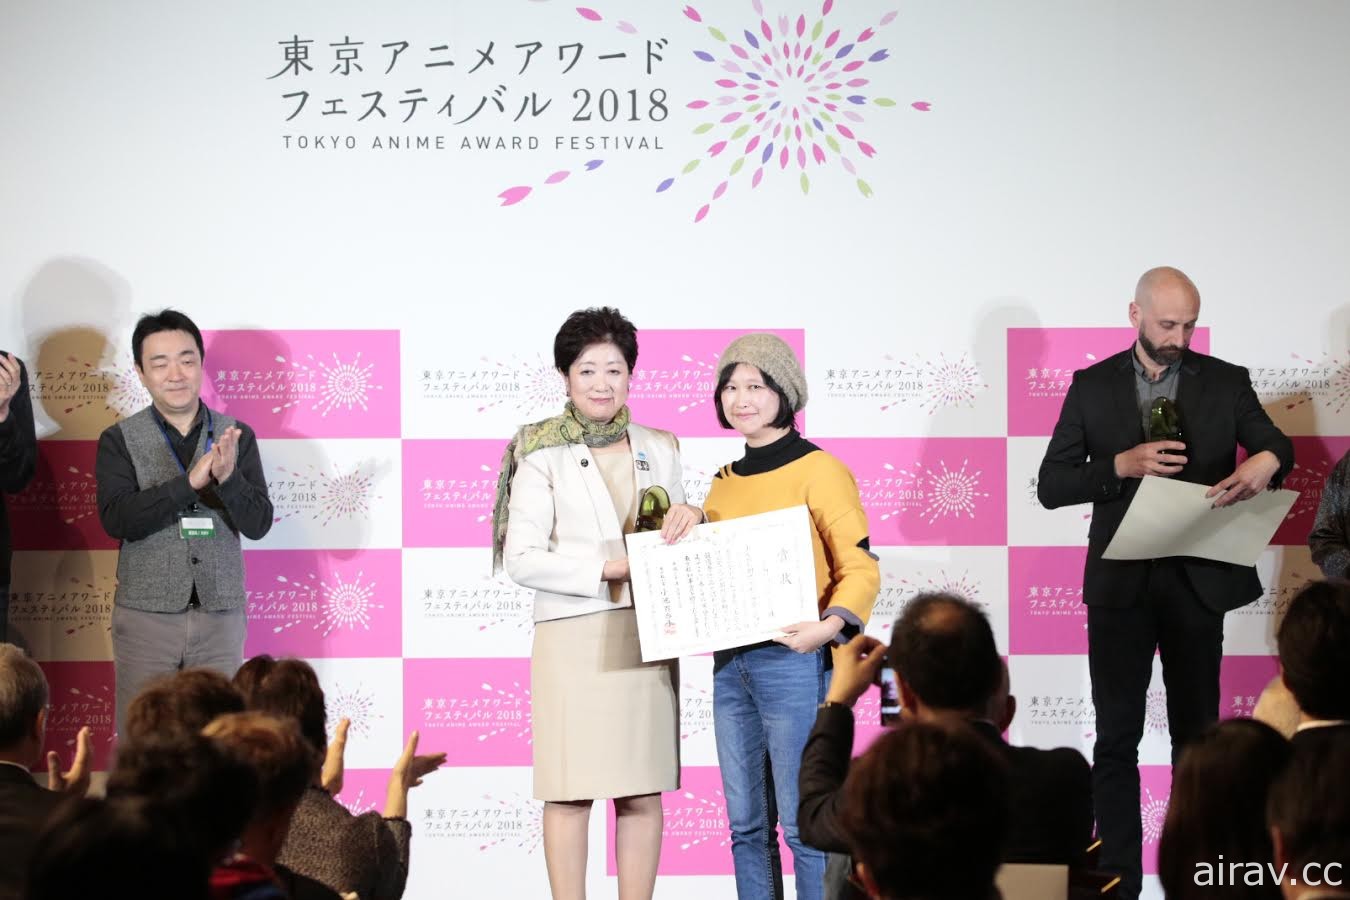 《幸福路上》台湾原创动画电影荣获“东京动画大奖”首奖！